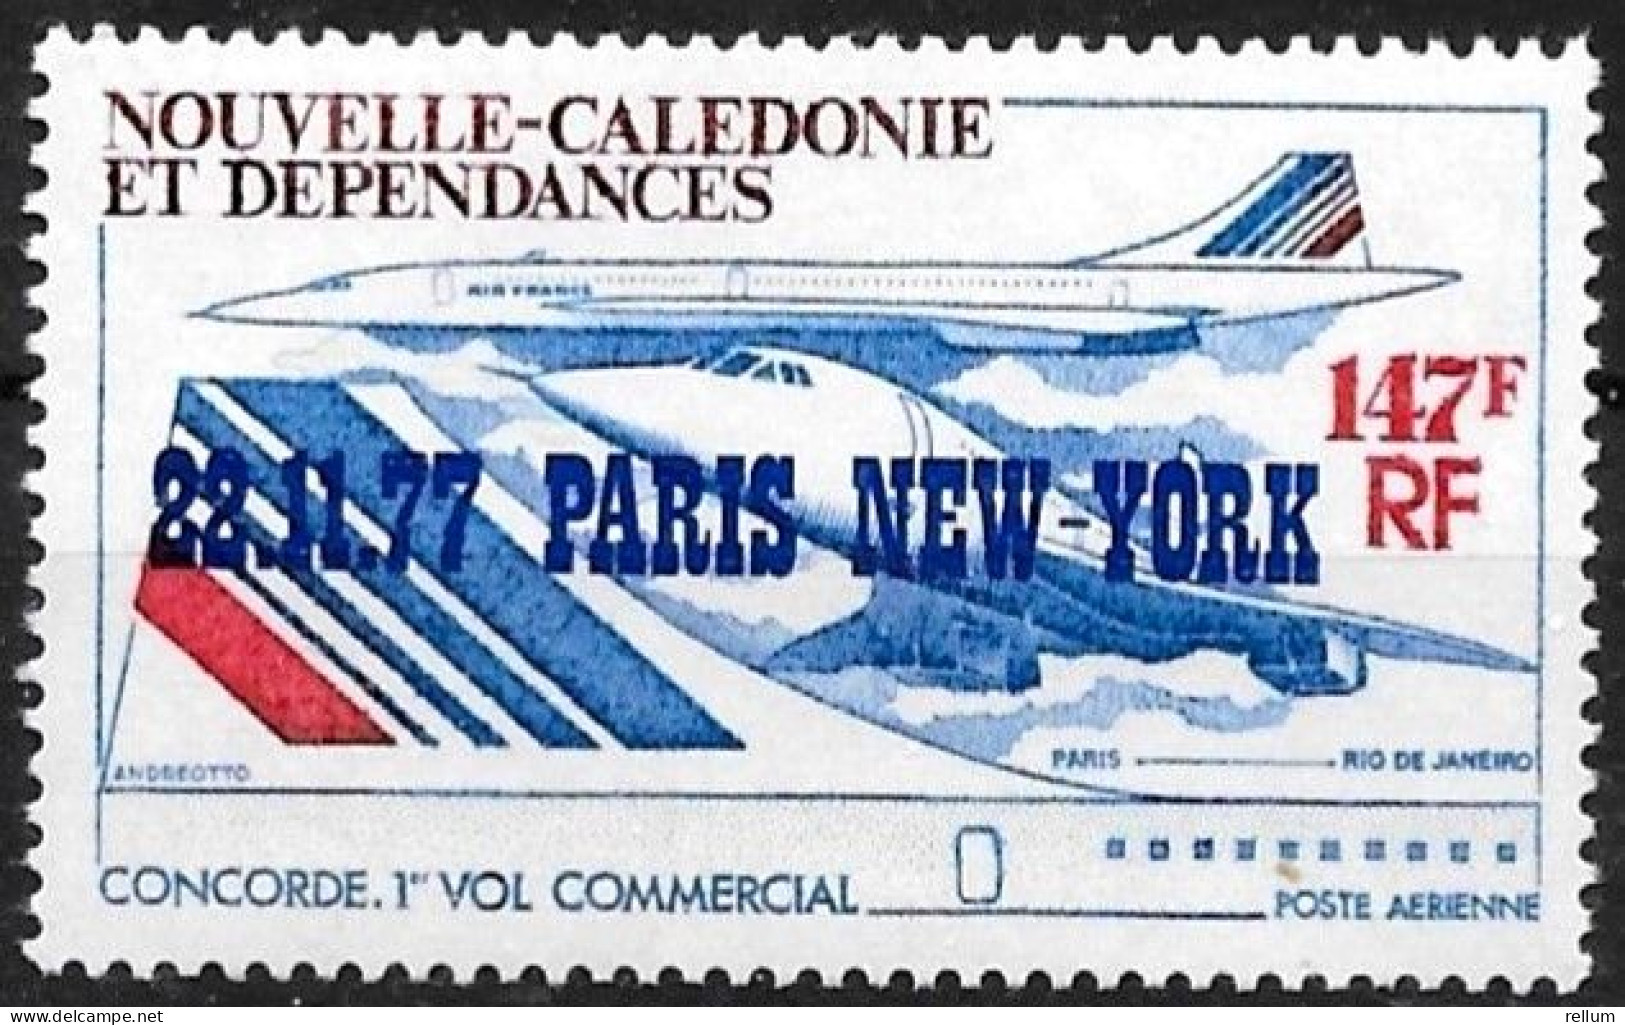 Nouvelle Calédonie 1977 - Yvert N° PA 181 - Michel N° 603 ** - Unused Stamps